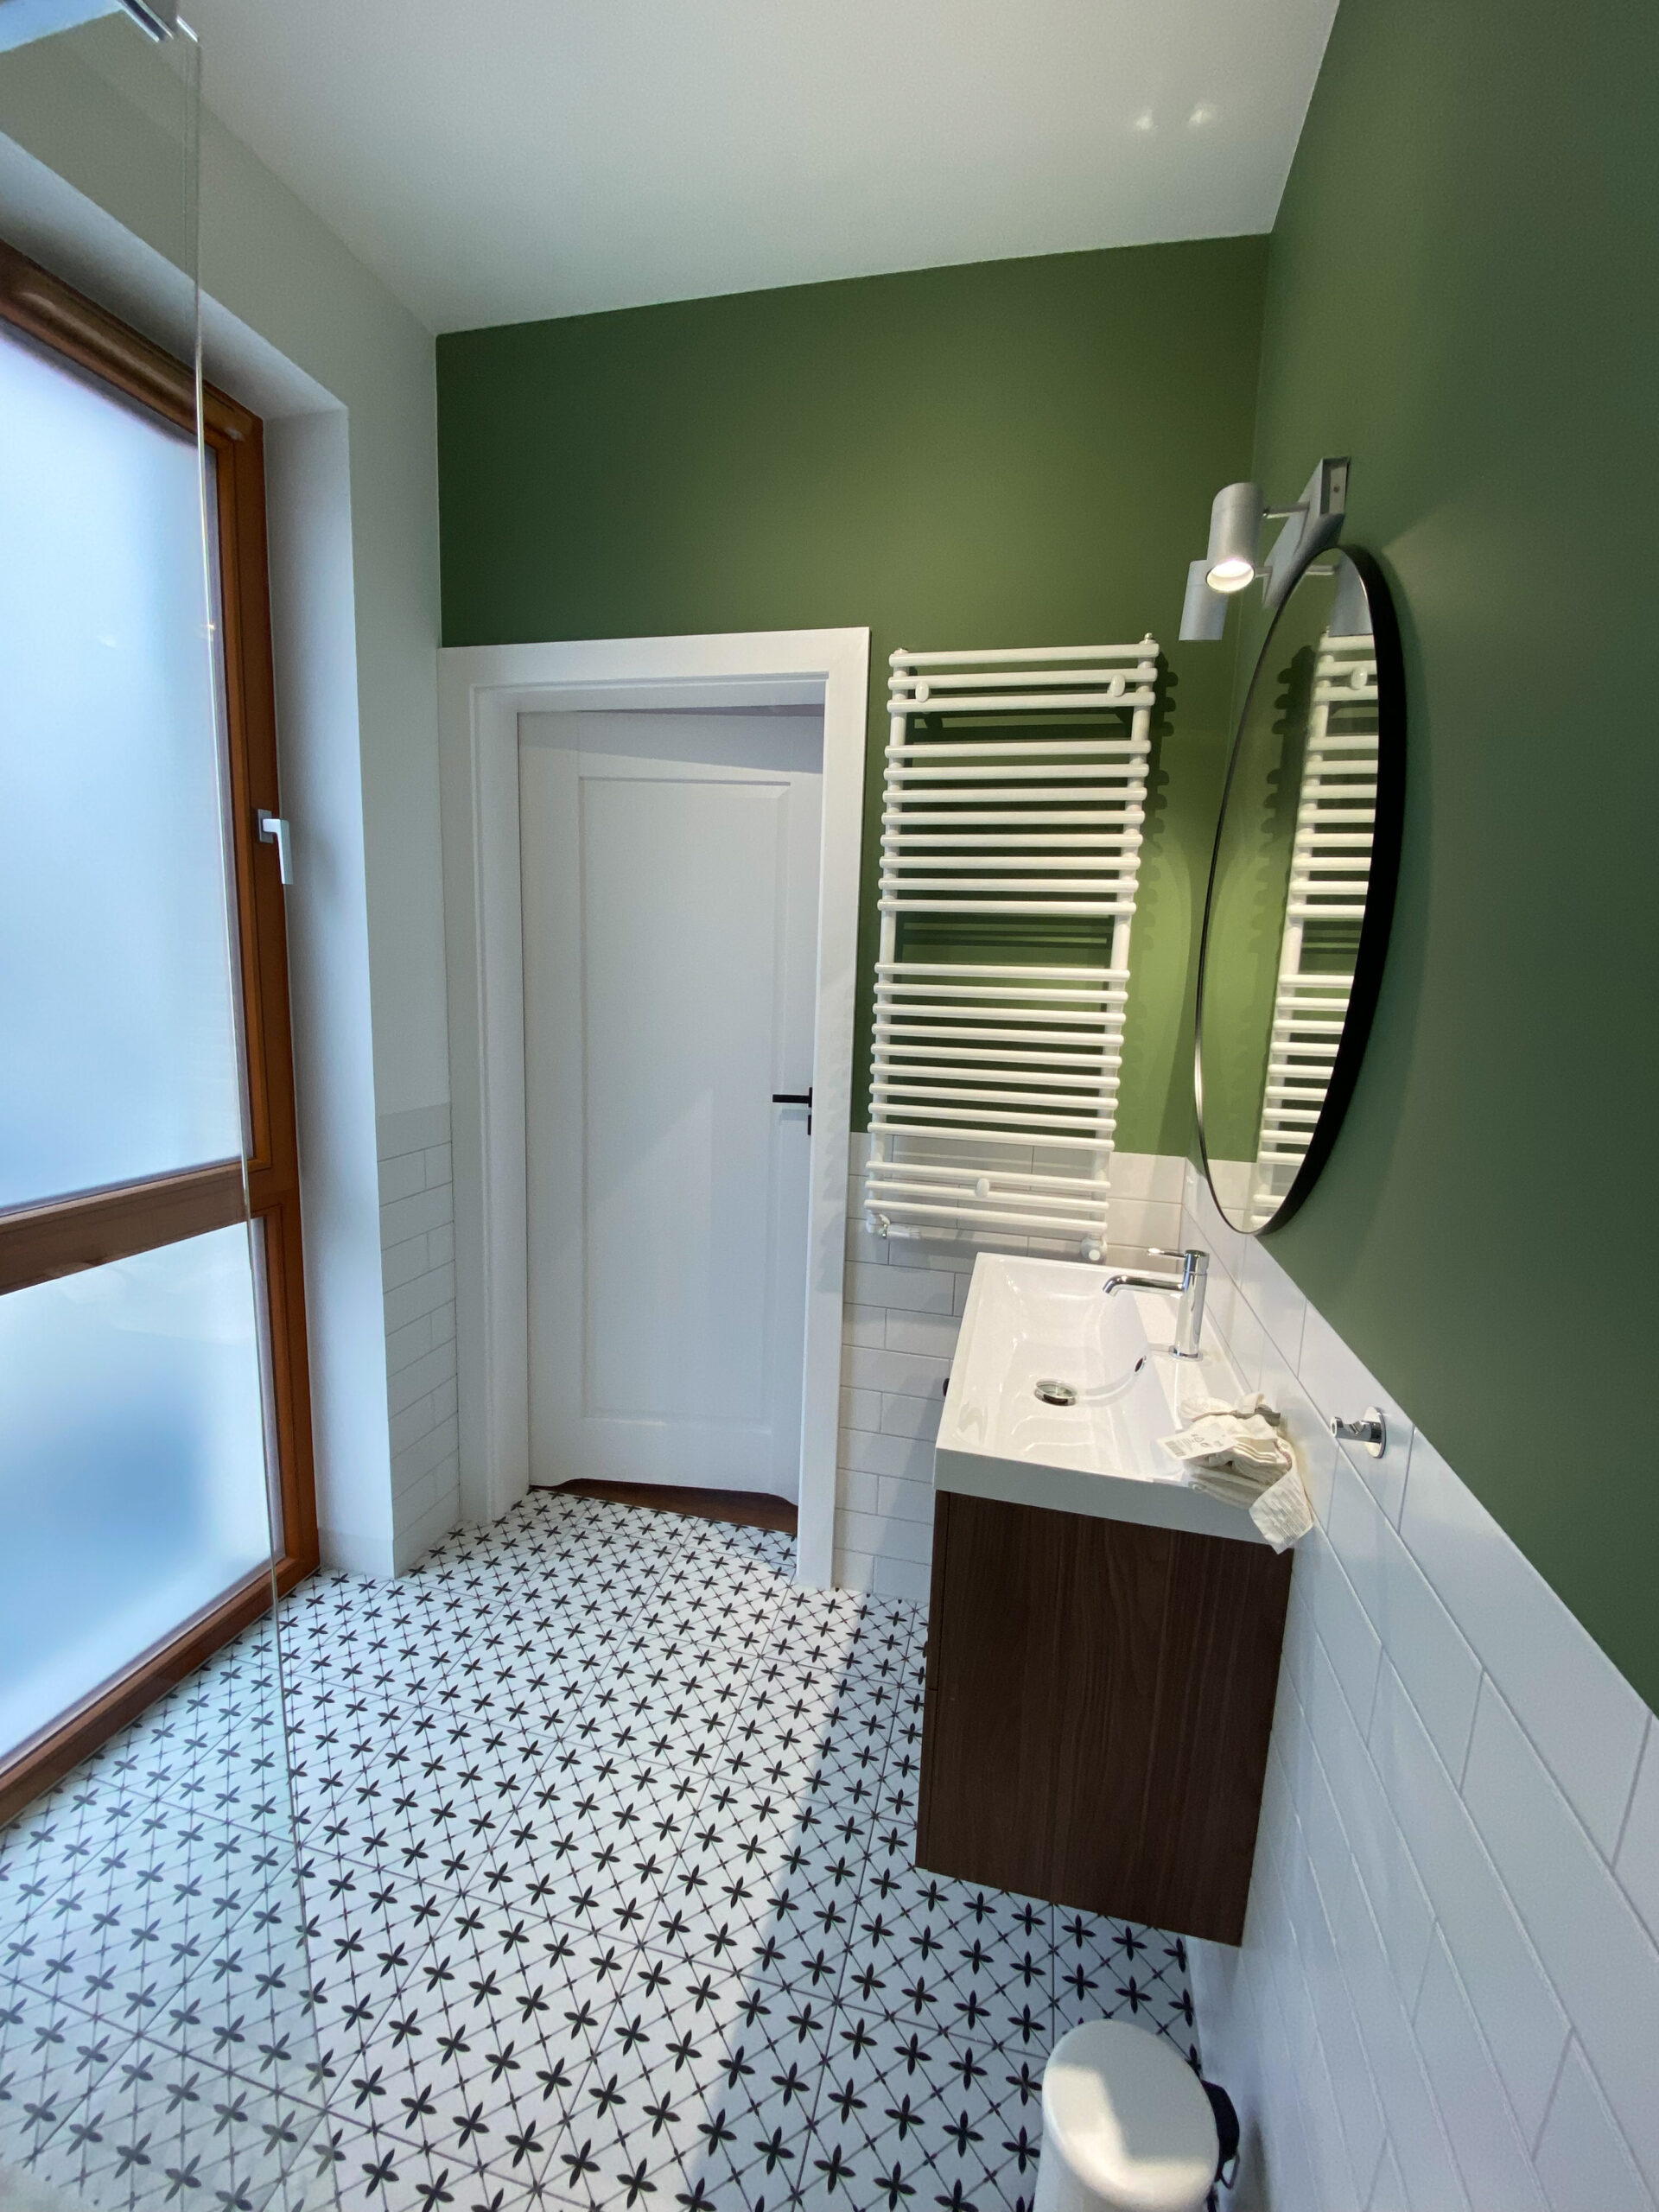 łazienka z prysznicem, płytki białe cegiełki tamoe, okrągłe lusto. zielona ściana